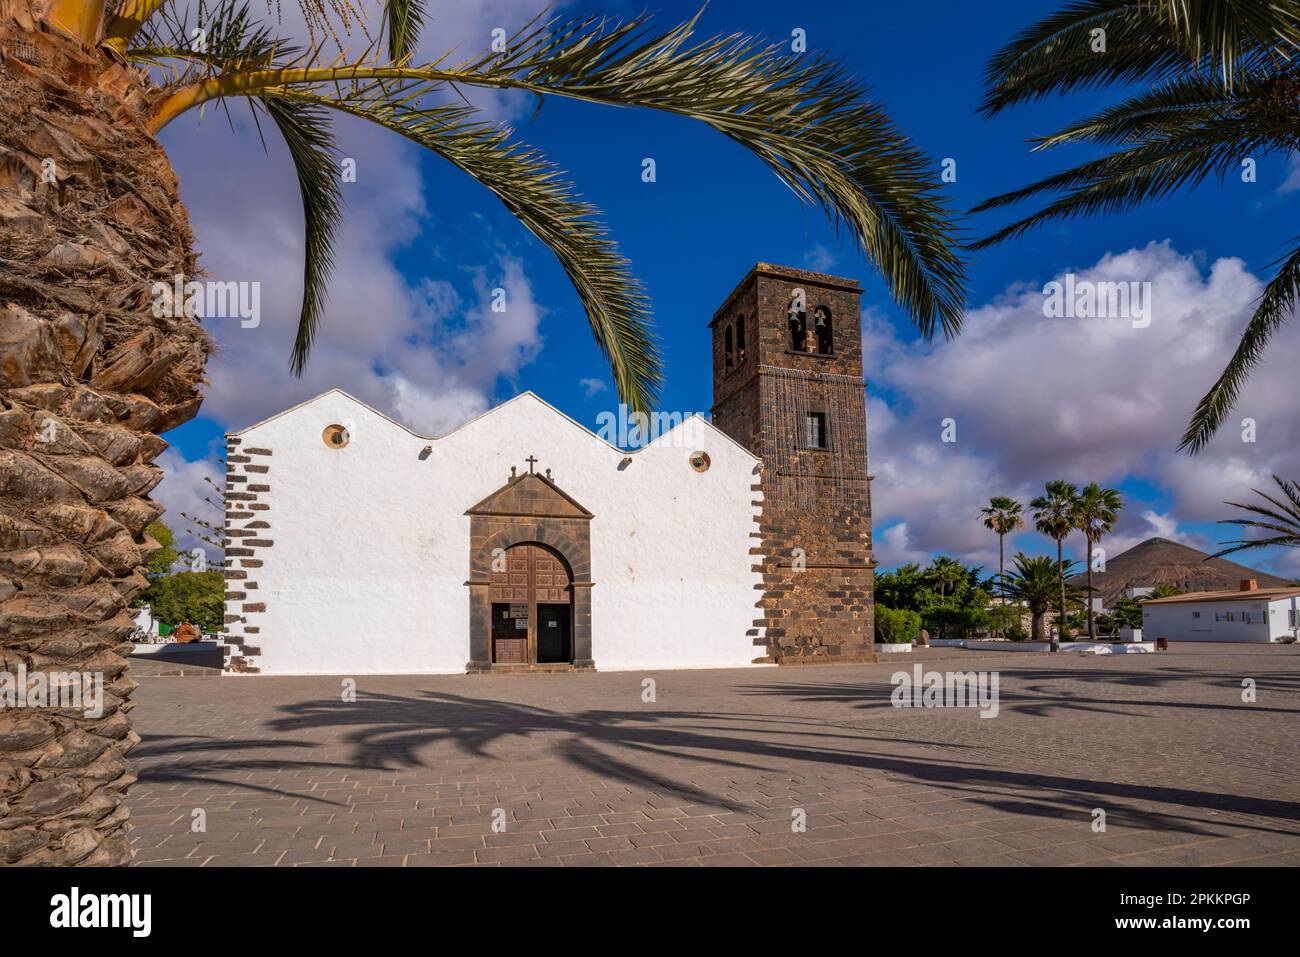 Vue de l'église notre-Dame de la Candelaria par une journée ensoleillée, la Oliva, Fuerteventura, îles Canaries, Espagne, Atlantique, Europe Banque D'Images